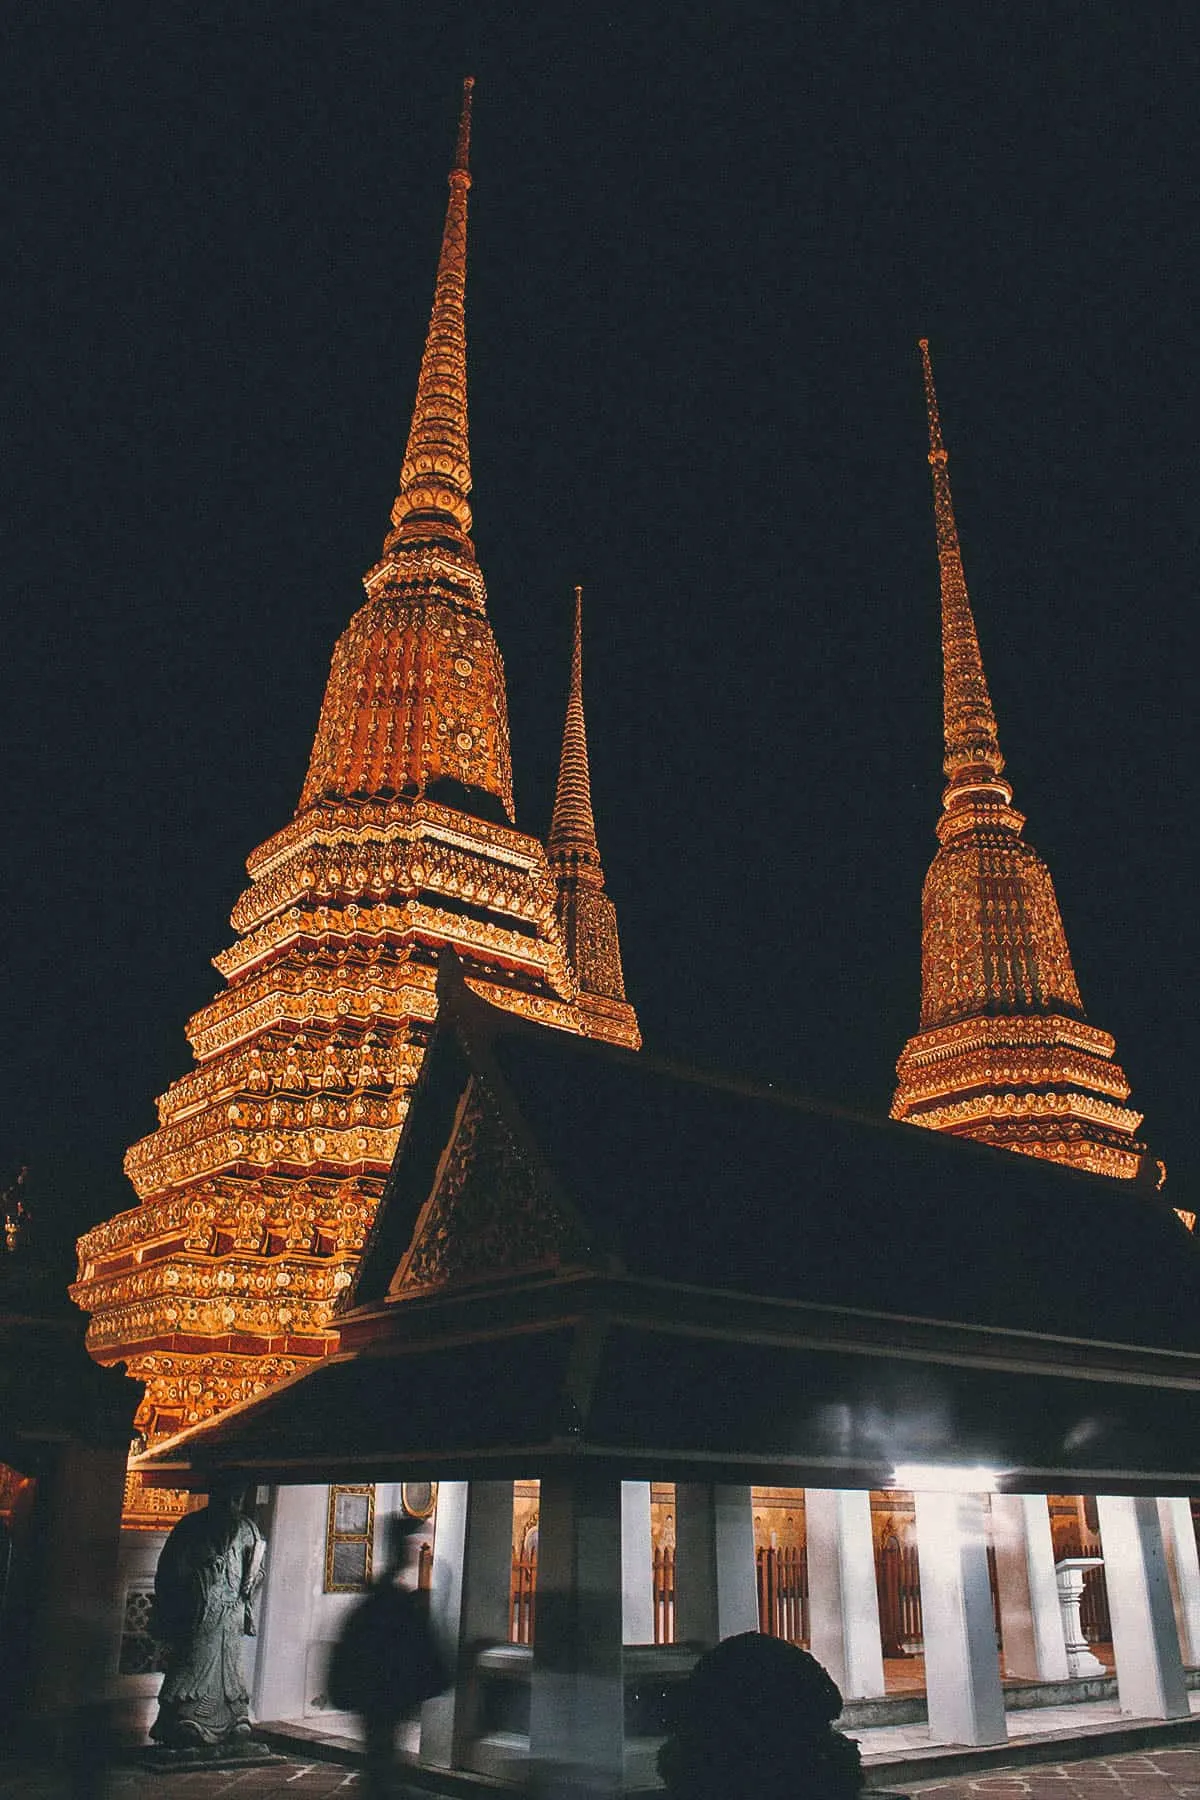 Bangkok, Thailand Tuk-Tuk Night Tour